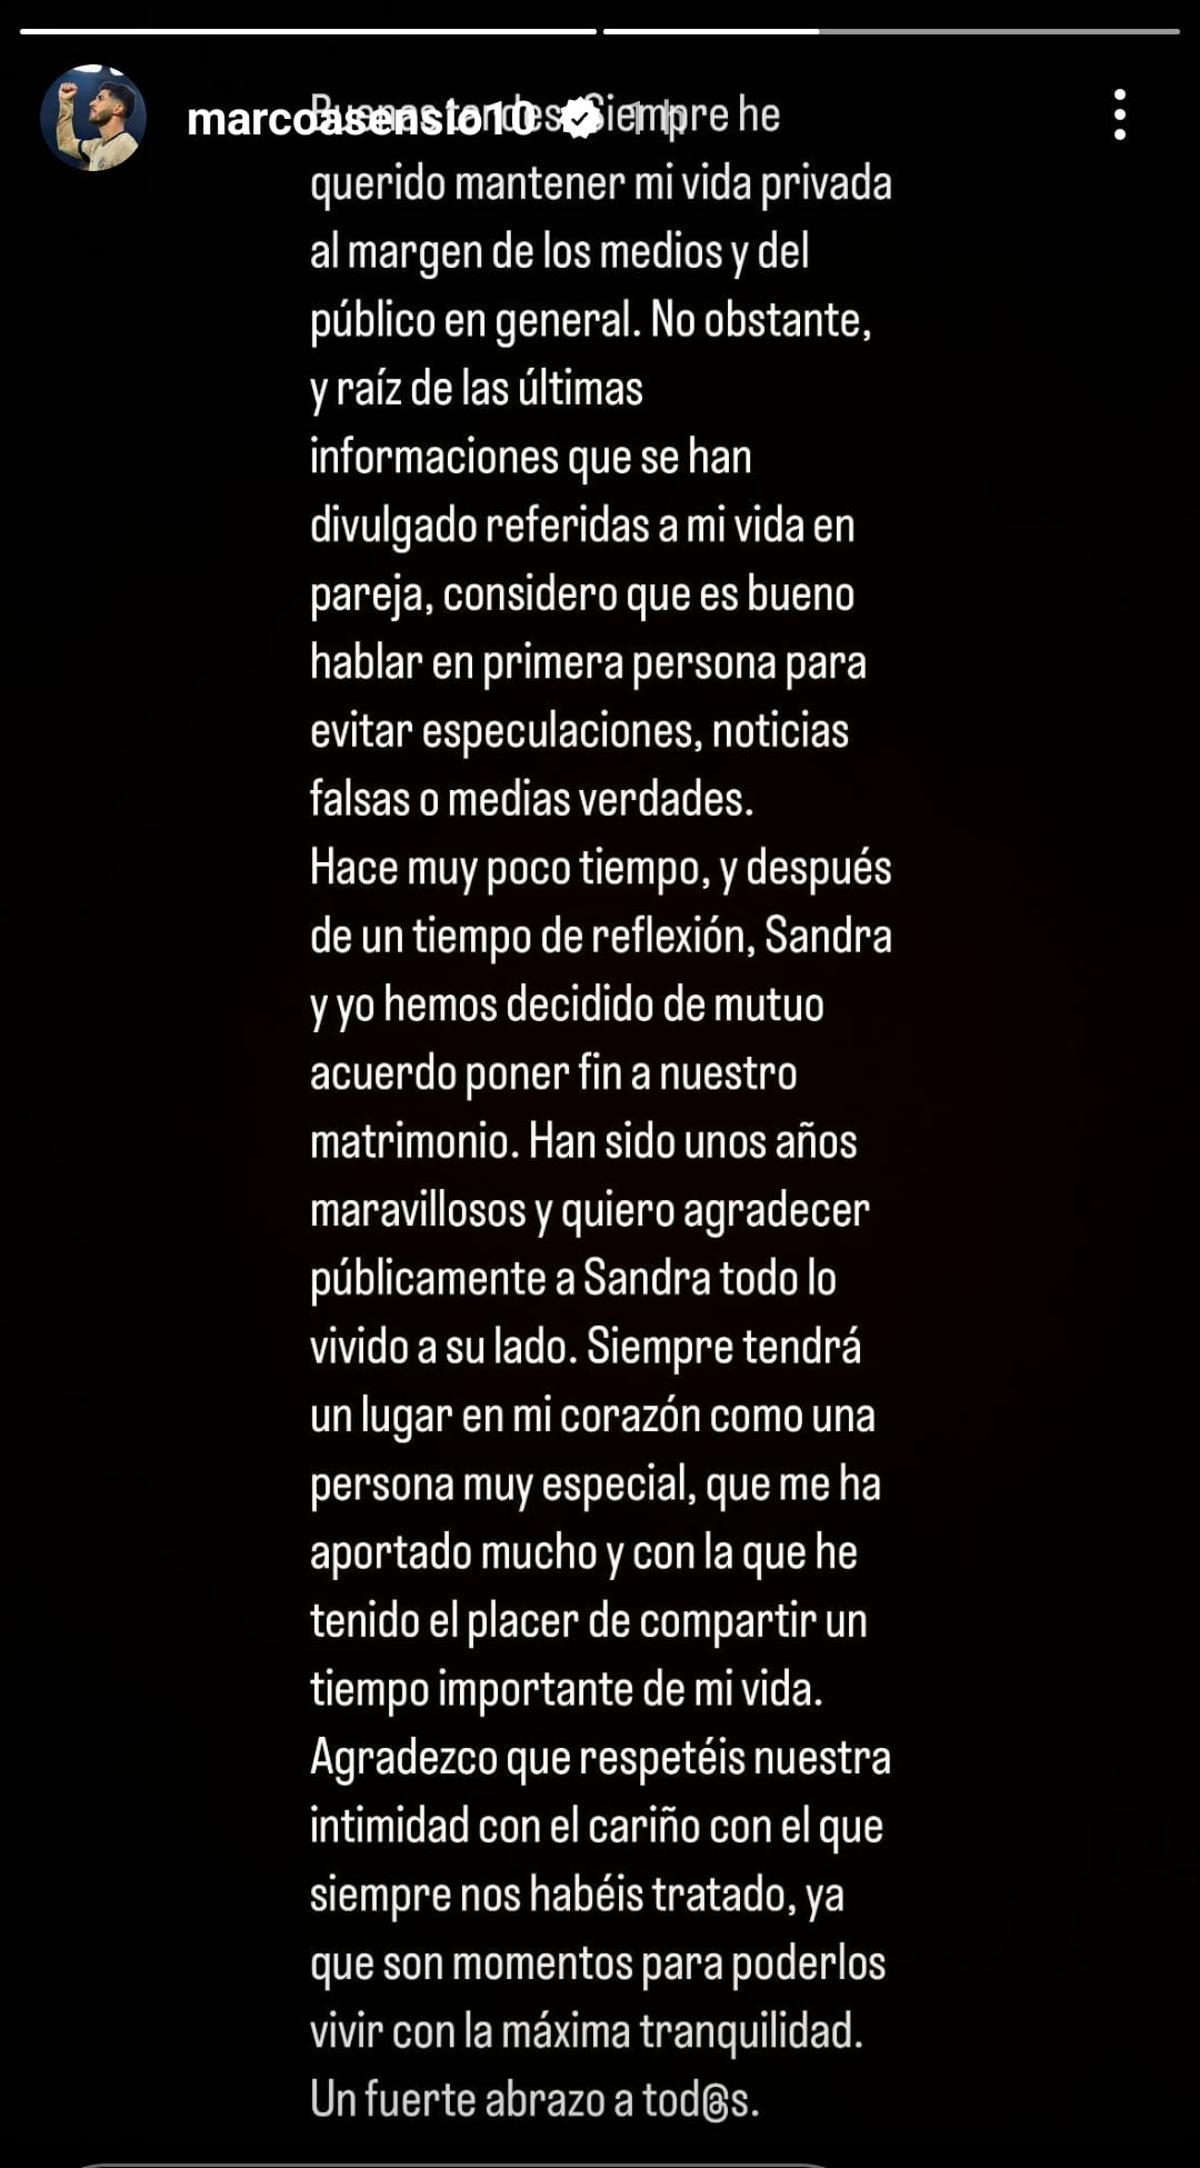 Este es el mensaje de Marco Asensio en Instagram.